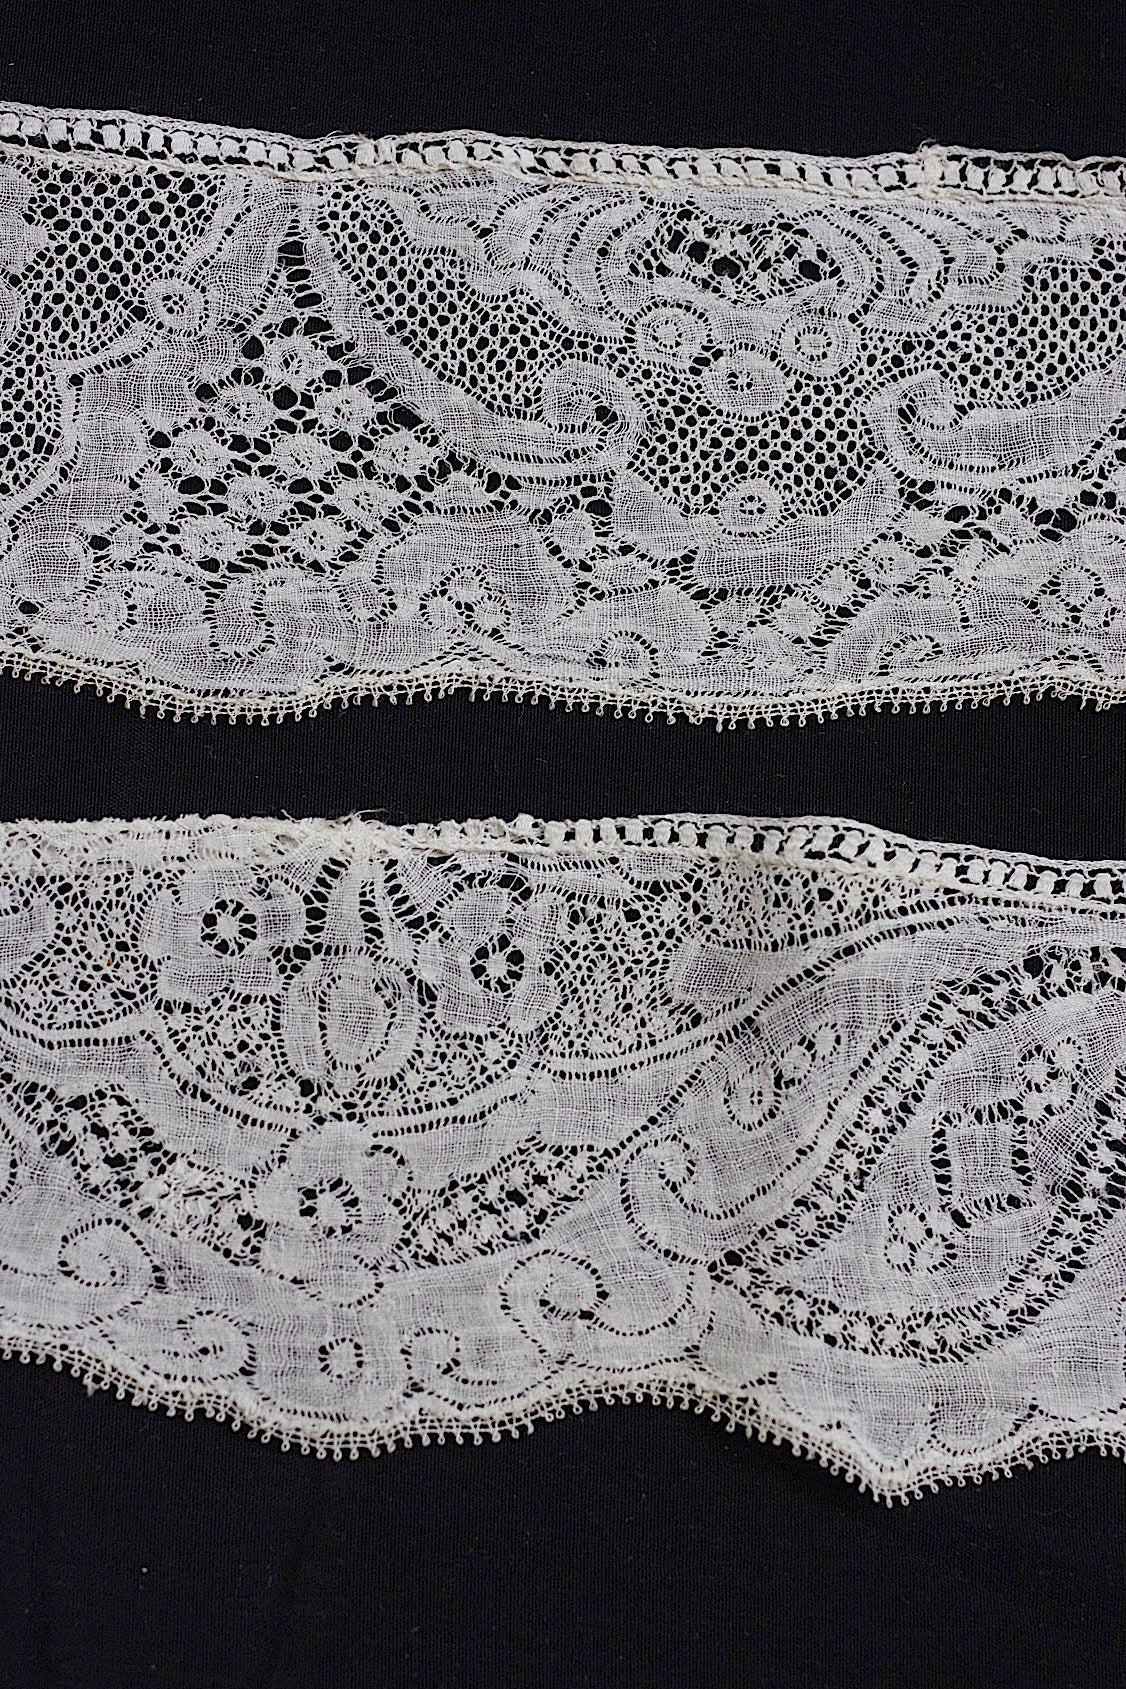 antique lace